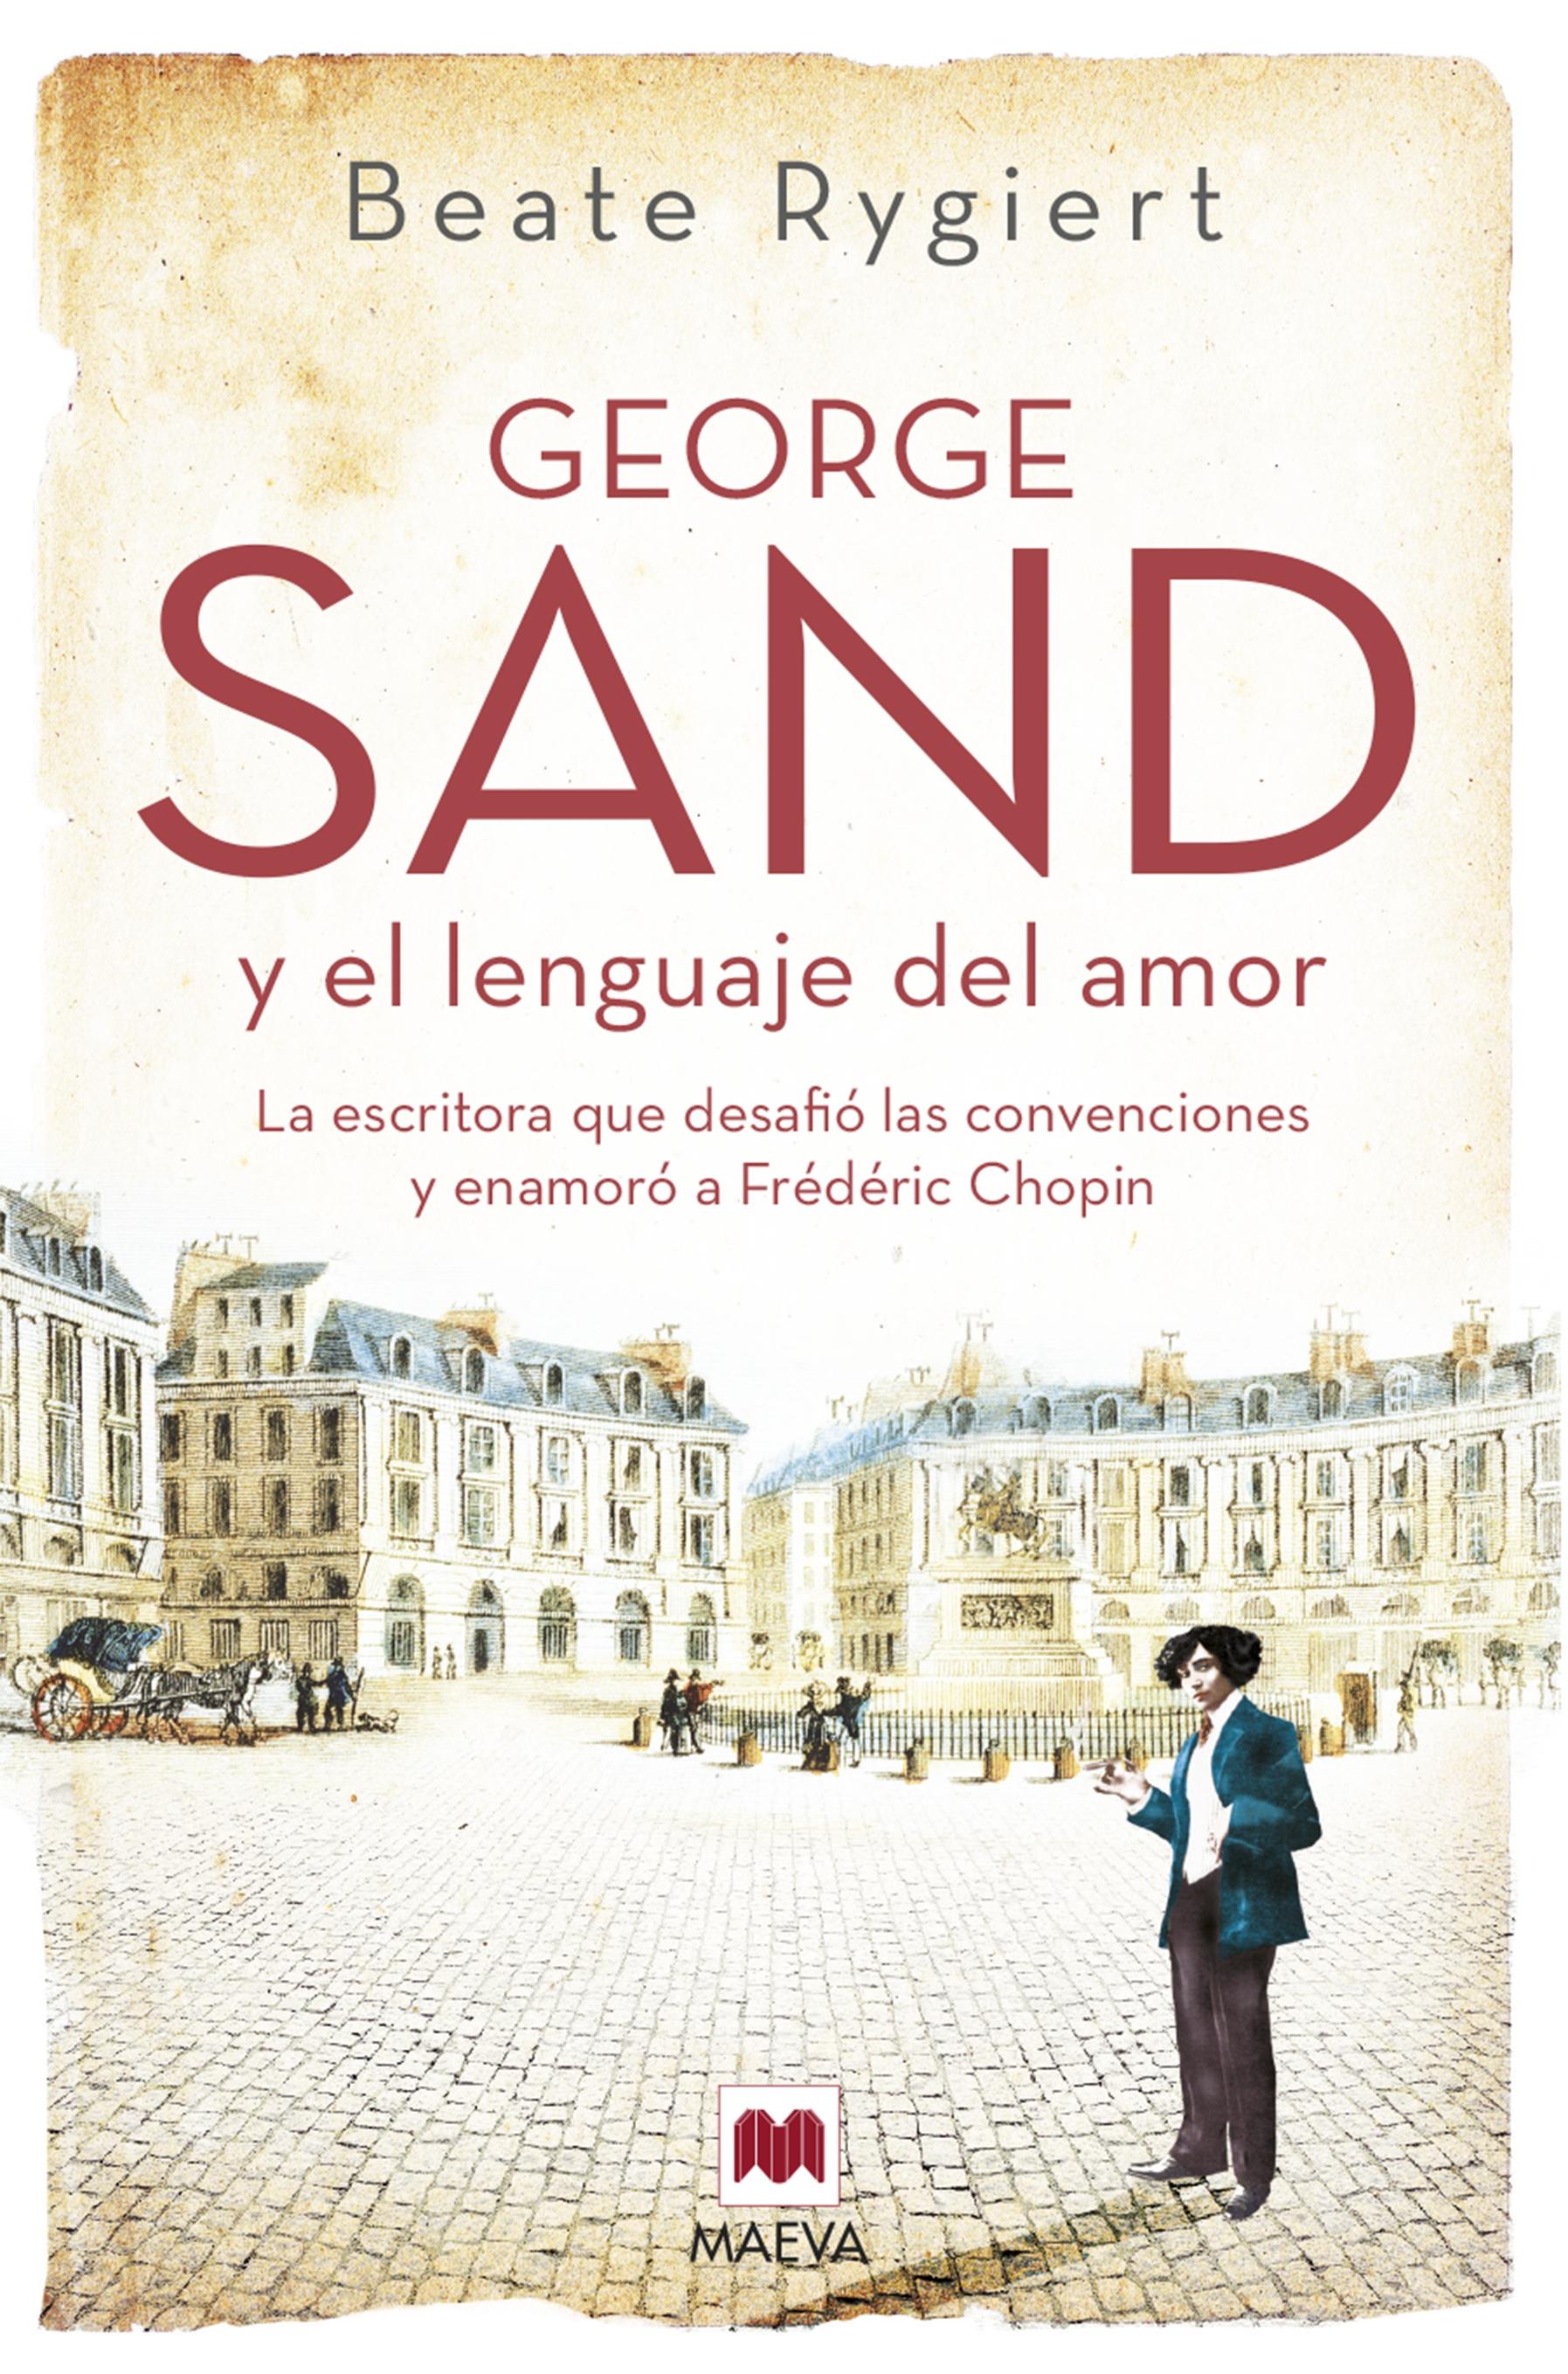 George Sand y el lenguaje del amor "La escritora que desafió las convenciones y enamoró a Fréderic Chopin"